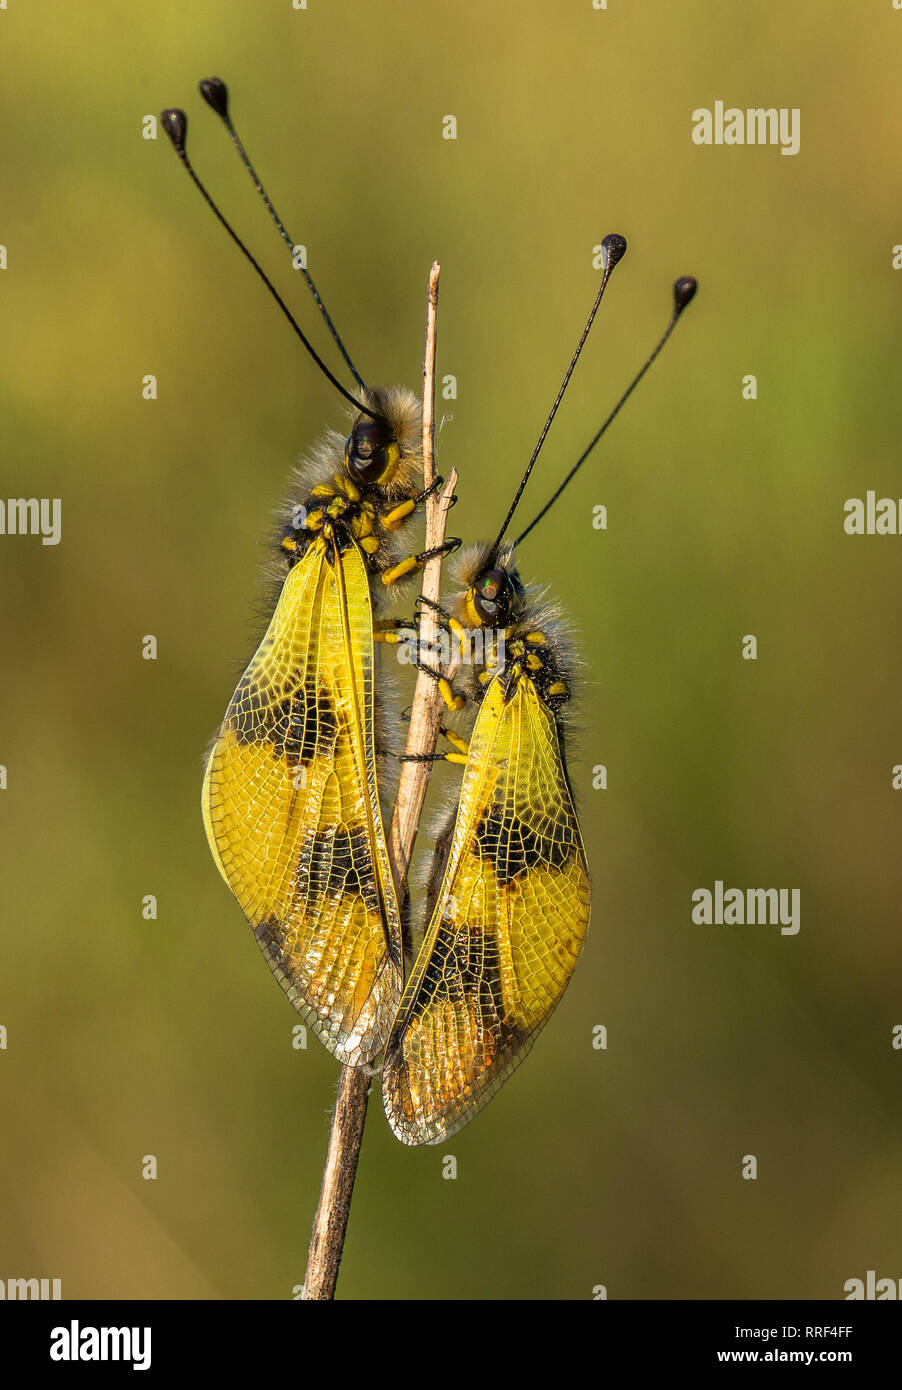 Wildlife macro photo of owlfly Libelloides macaronius Stock Photo